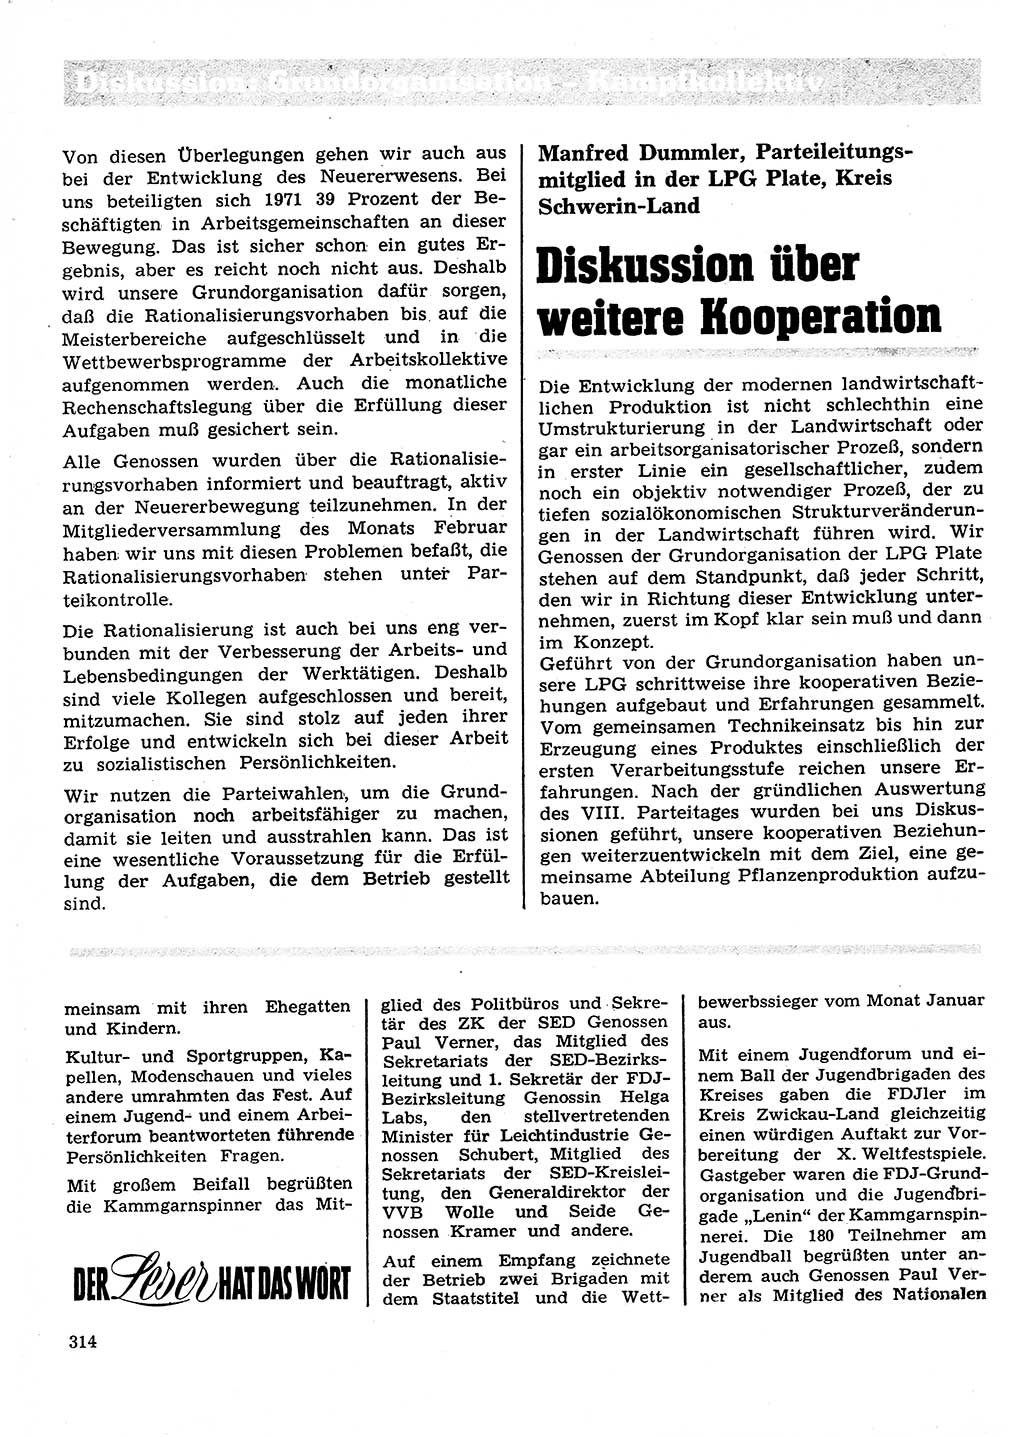 Neuer Weg (NW), Organ des Zentralkomitees (ZK) der SED (Sozialistische Einheitspartei Deutschlands) für Fragen des Parteilebens, 27. Jahrgang [Deutsche Demokratische Republik (DDR)] 1972, Seite 314 (NW ZK SED DDR 1972, S. 314)